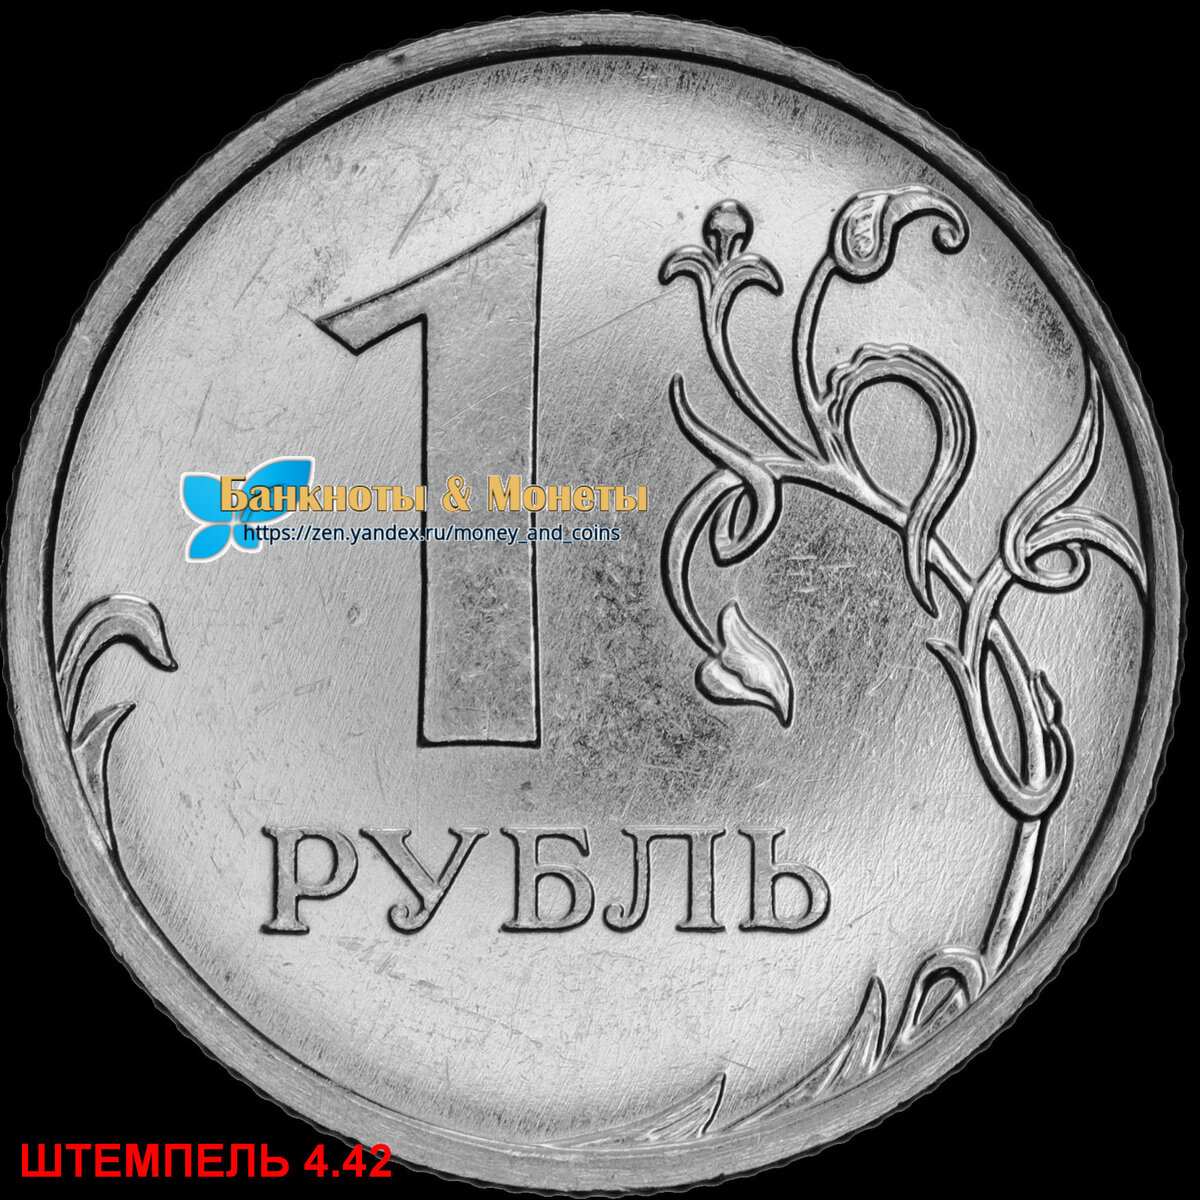 Рубль в 2010. 1 Рубль 2010. Редкая монета 1 рубль 2005. Брак 1 рубль 2010 года. Редкий рубль с листиком.